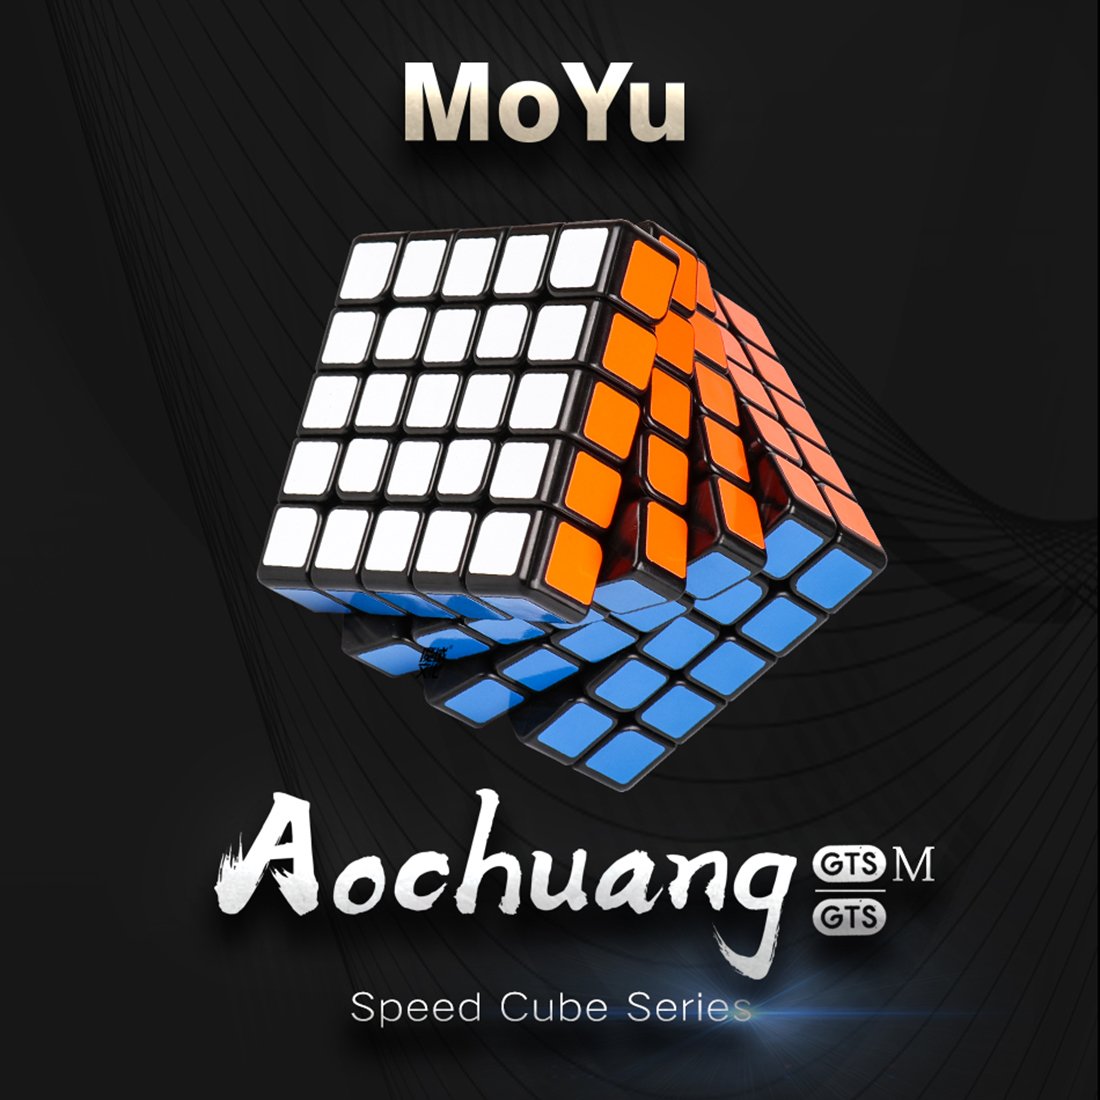 Yj8263 Moyu Aochuang Gts M 5X5 Magic Cube - Magnetic Version